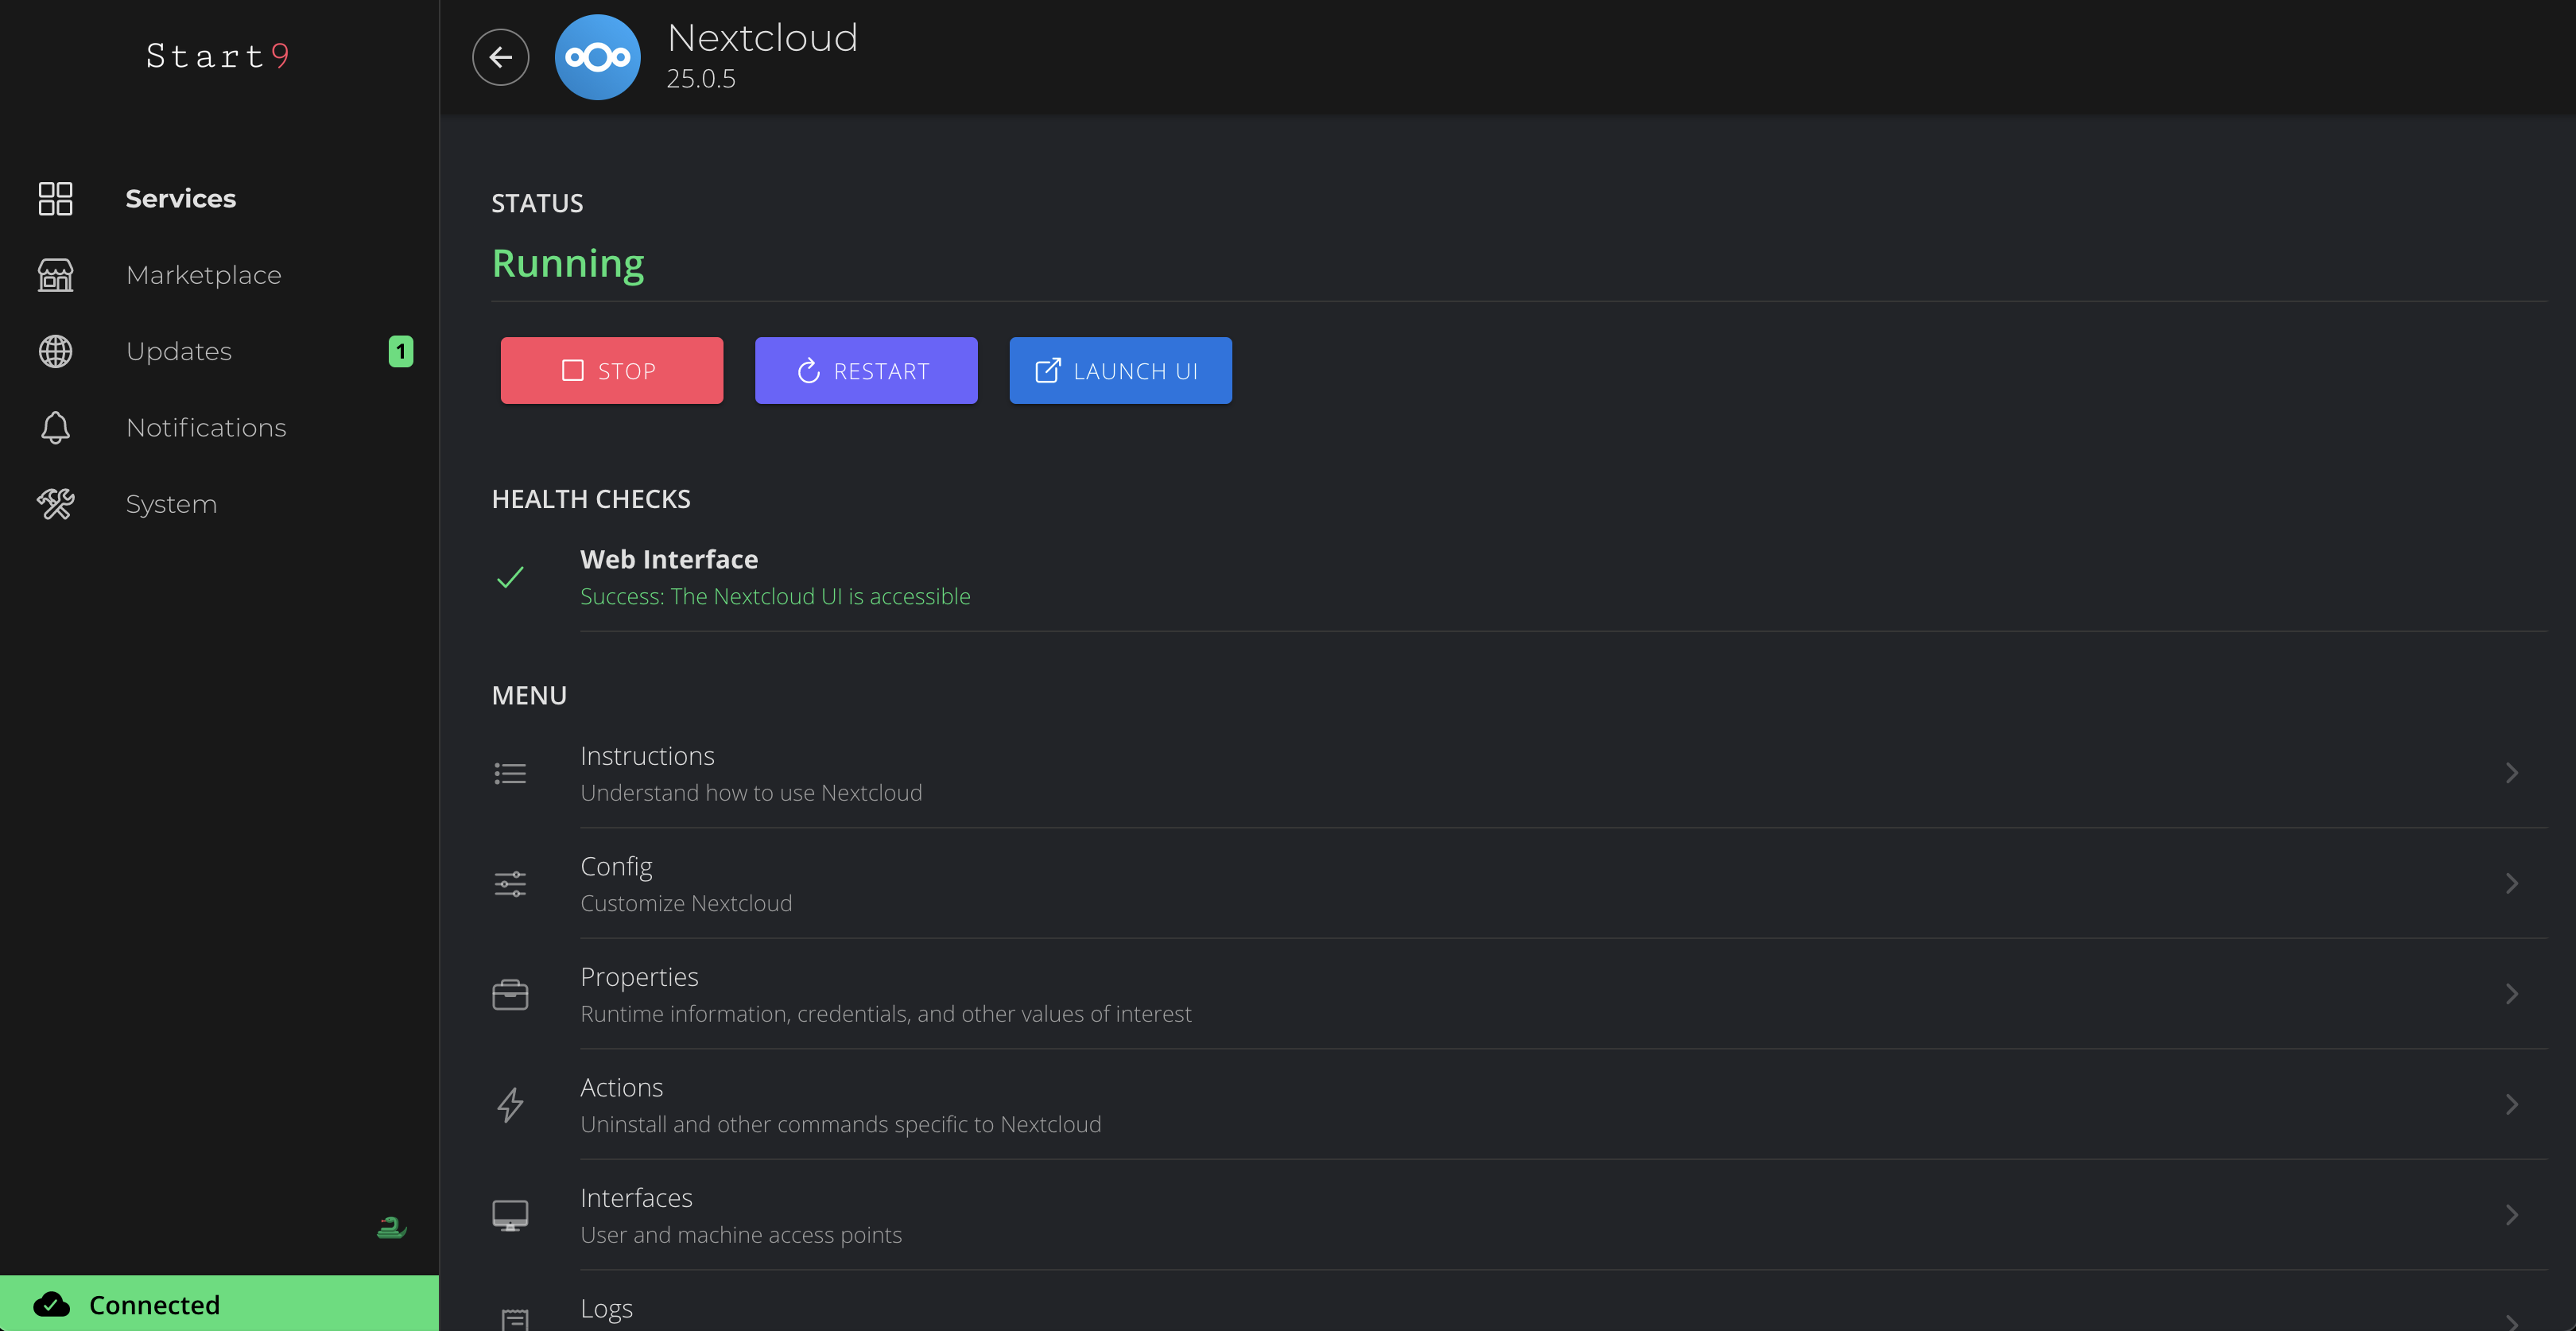 StartOS NextCloud Service